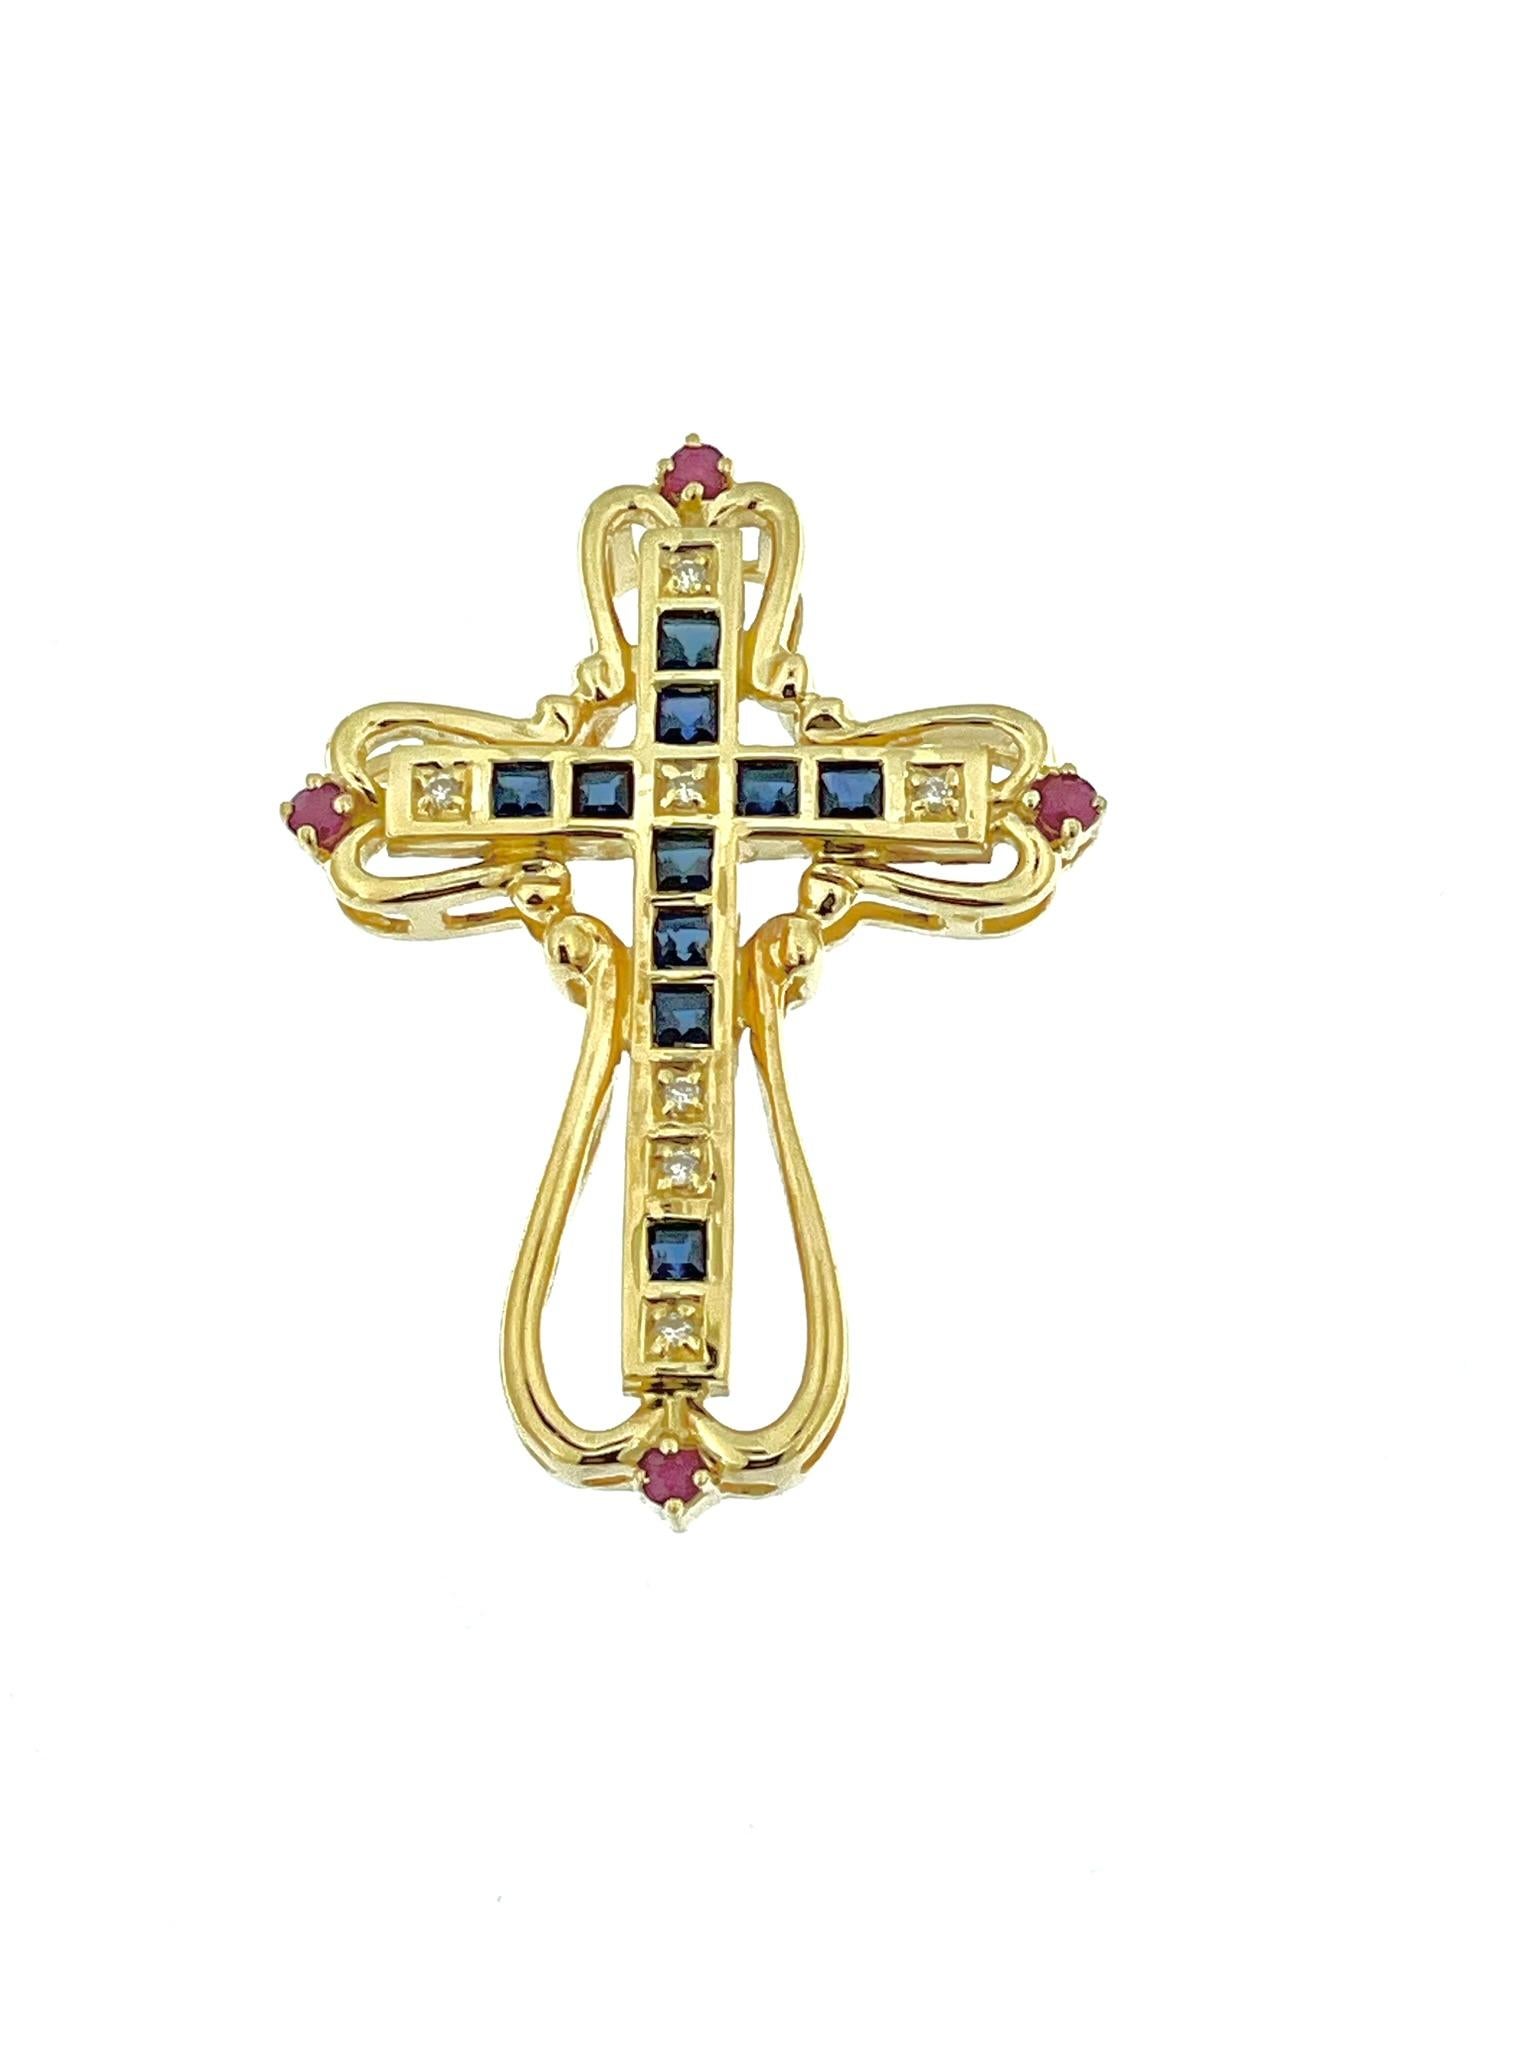 Das italienische Kreuz aus Gelbgold mit Diamanten, Saphiren und Rubinen ist ein atemberaubendes Schmuckstück, das Luxus und Raffinesse ausstrahlt. Dieses aus 18-karätigem Gold gefertigte Kreuz zeigt die unvergleichliche Kunstfertigkeit und Liebe zum